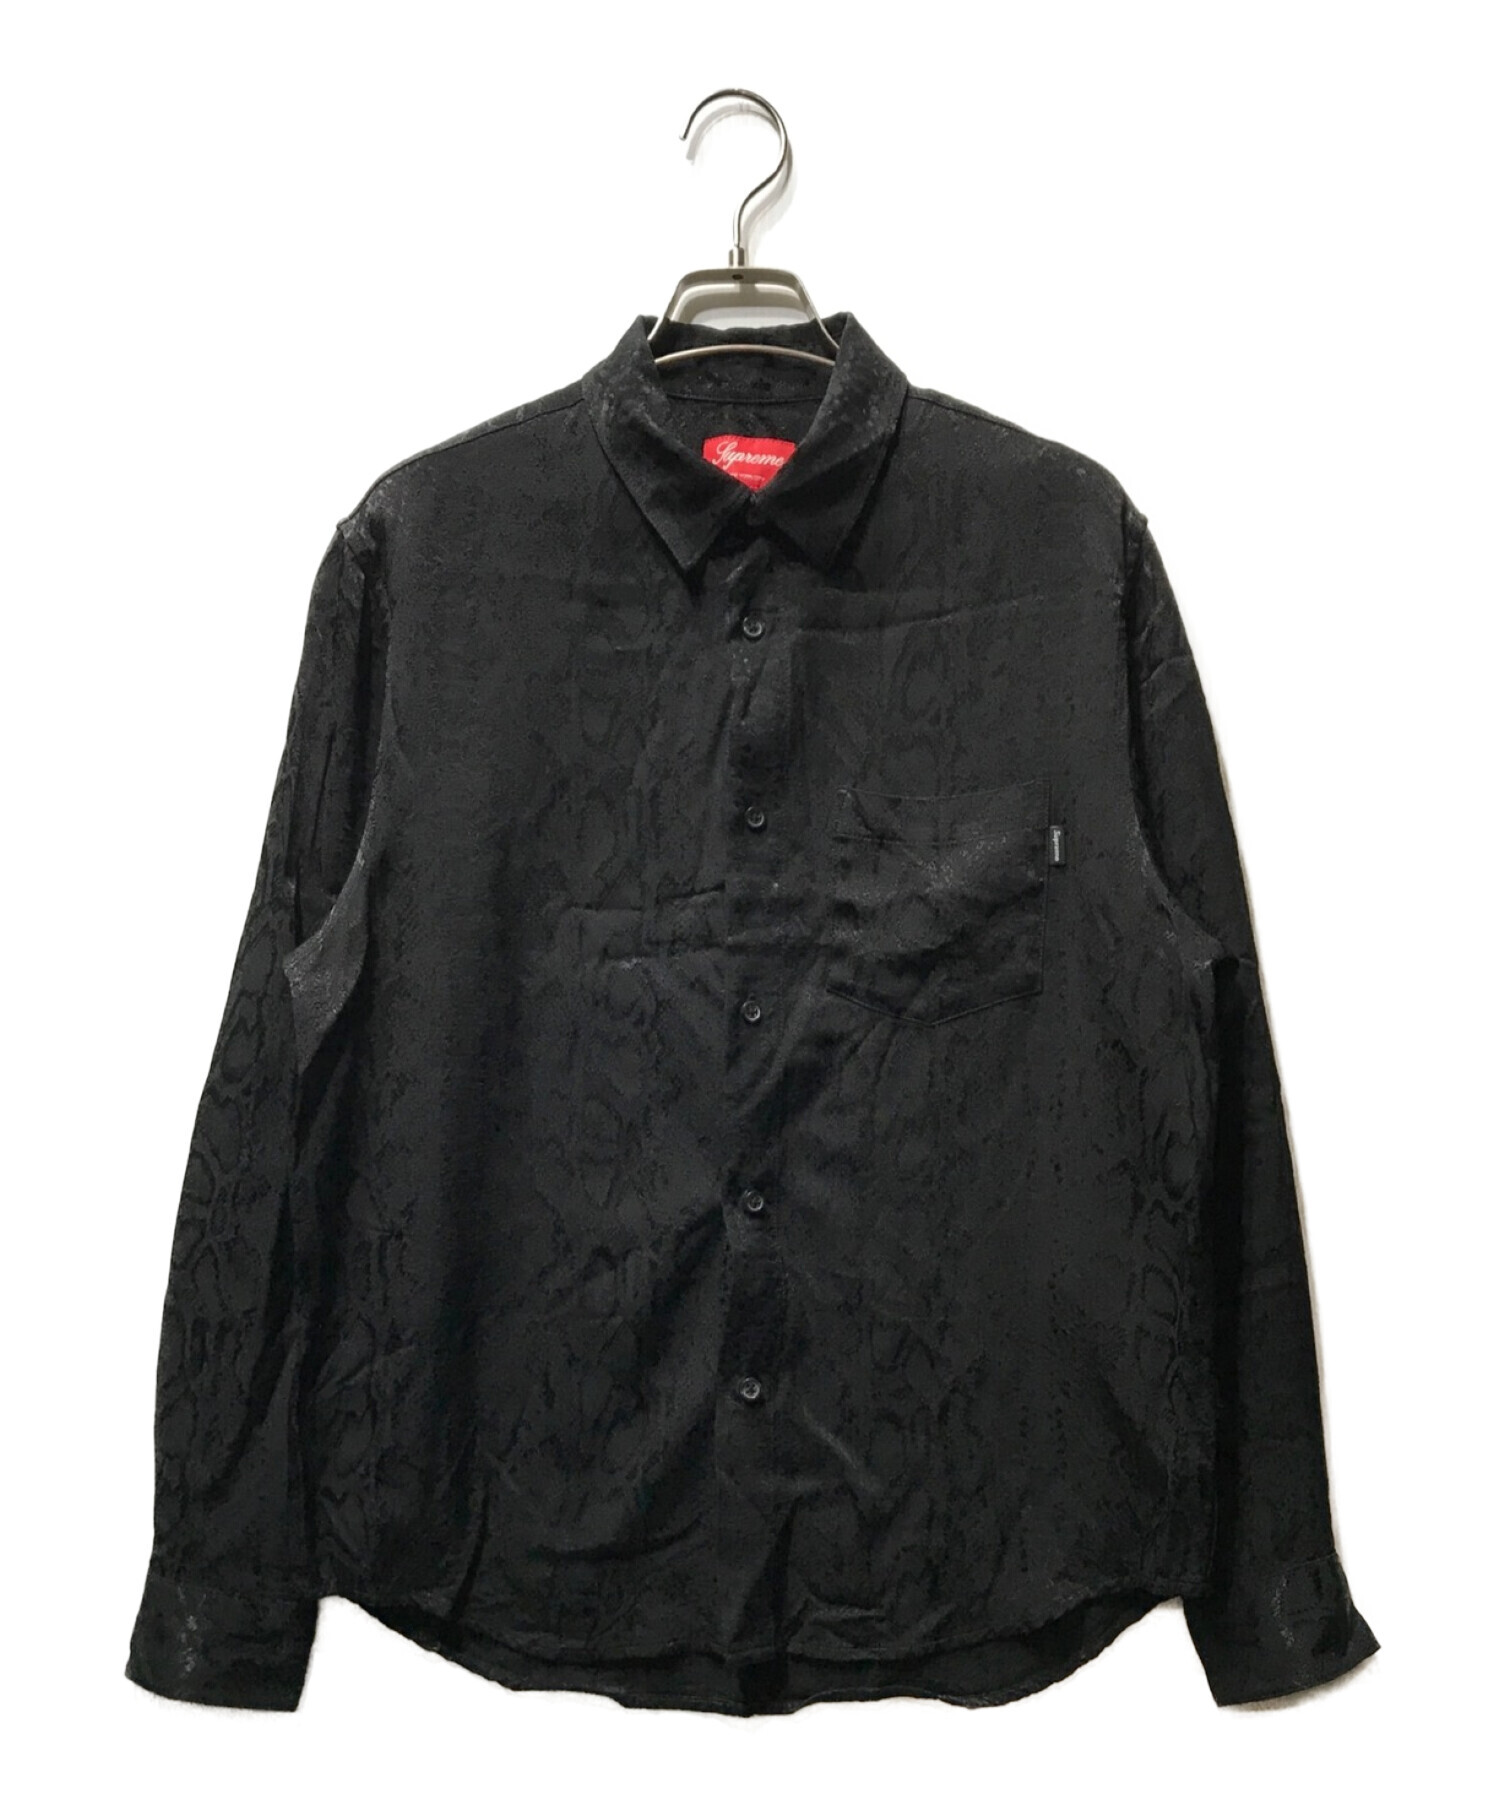 Snakeskin Jacquard Shirt Mサイズ Black パイソン - シャツ